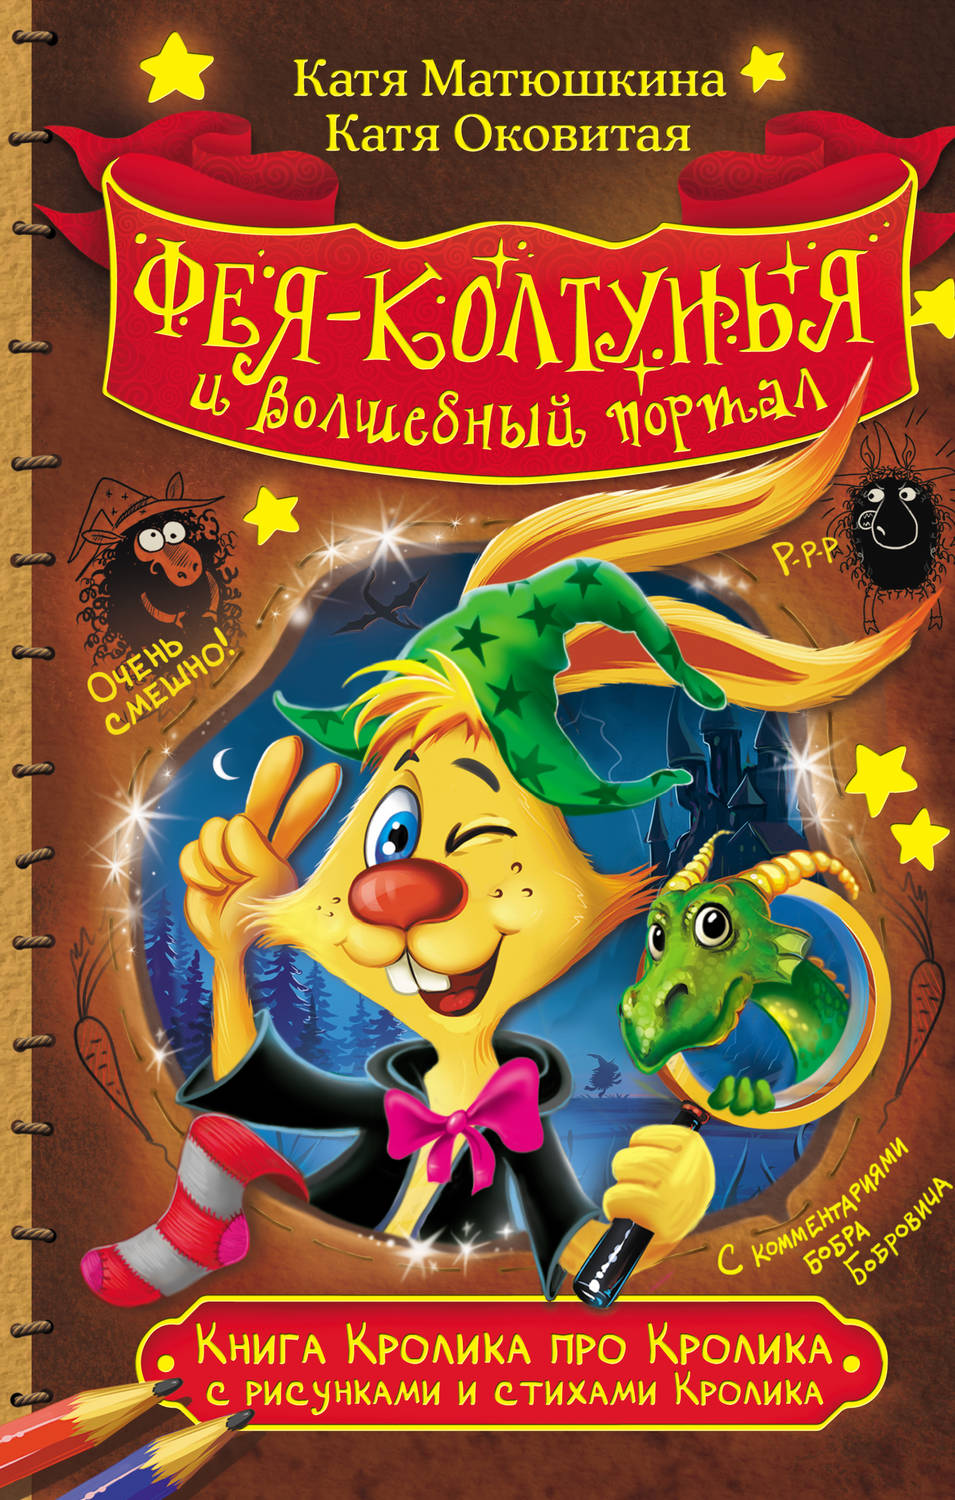 Обложка книги Книга Кролика про Кролика с рисунками и стихами Кролика. Фея-колтунья и волшебный портал